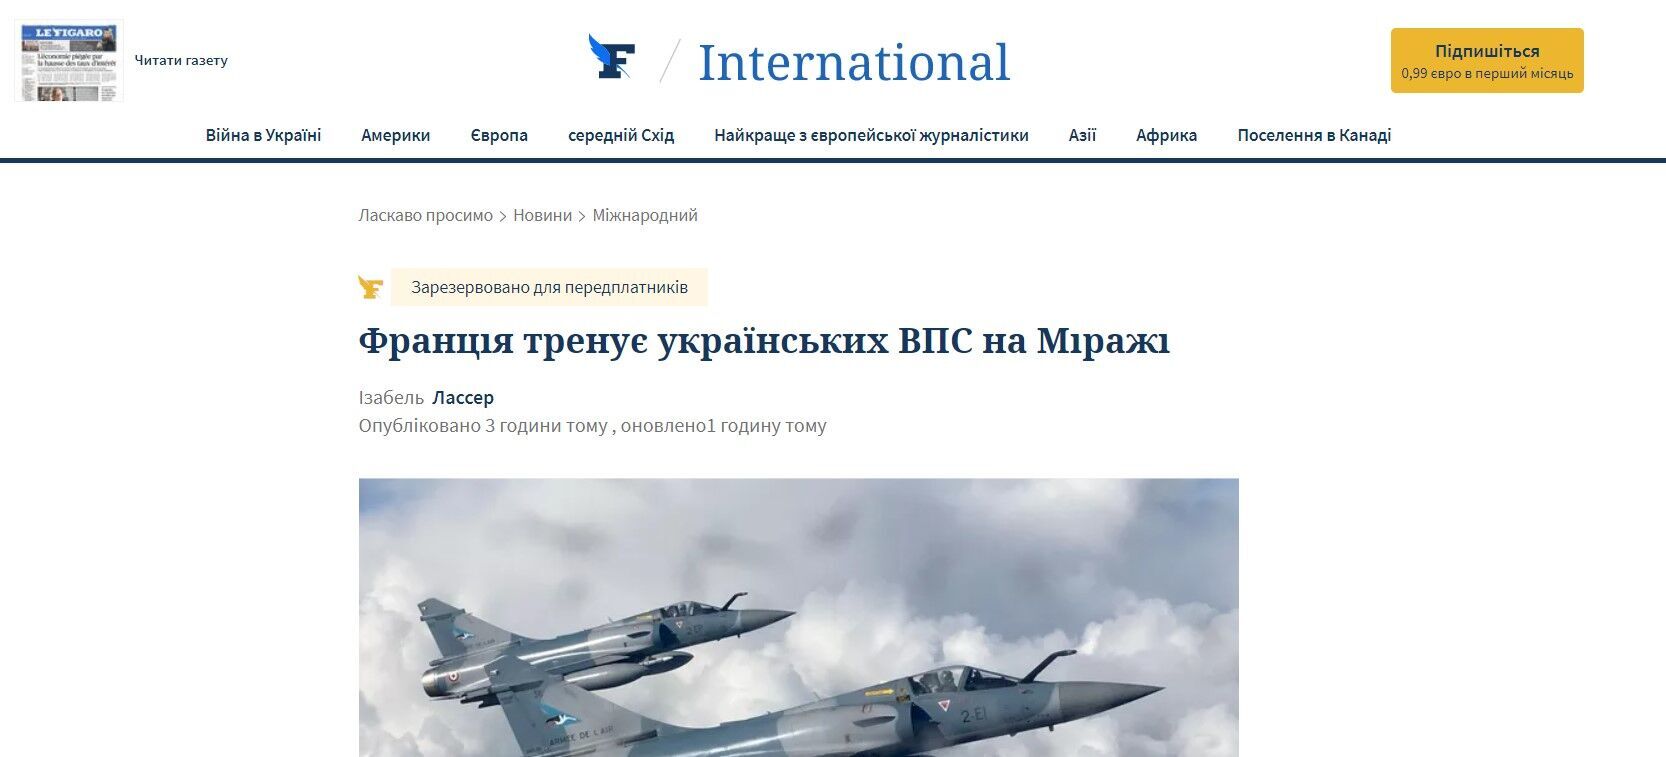 Le Figaro про навчання українських пілотів на Mirage 2000